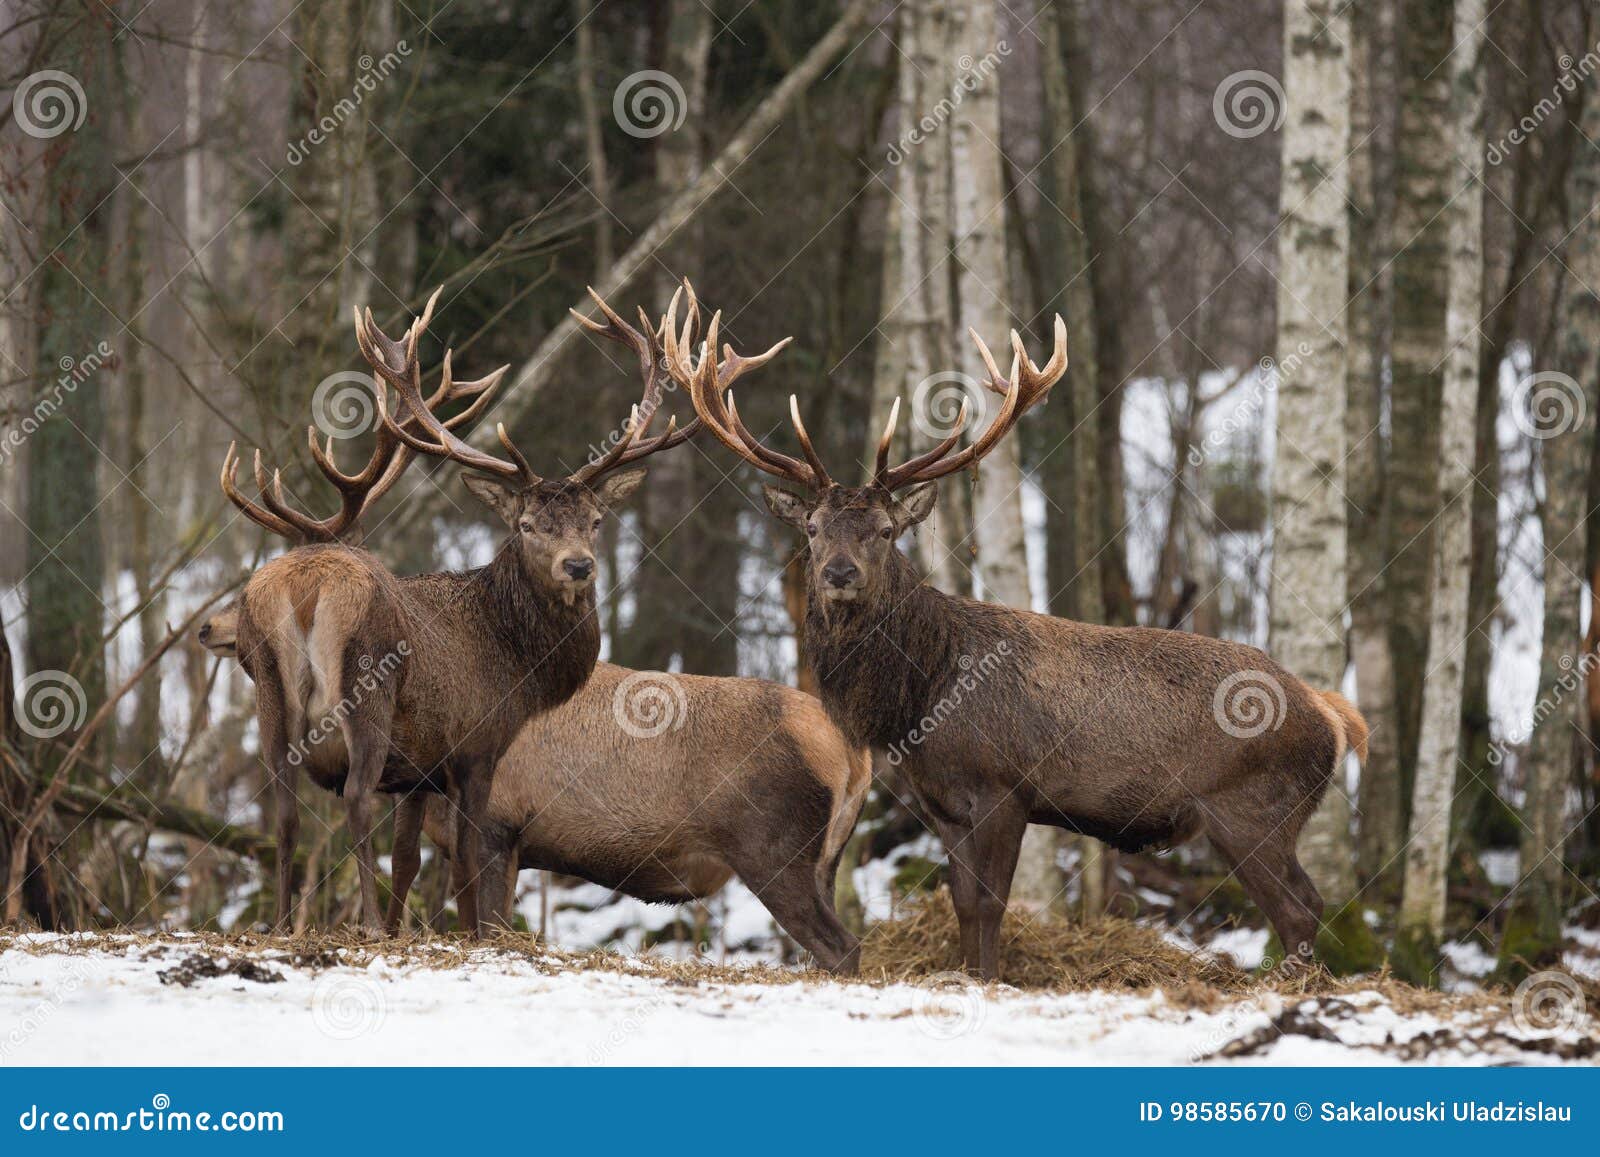 small herd of red deer cervidae : two deer stag,looks at you. several beautiful adult deer cervus elaphus in winter time. wi